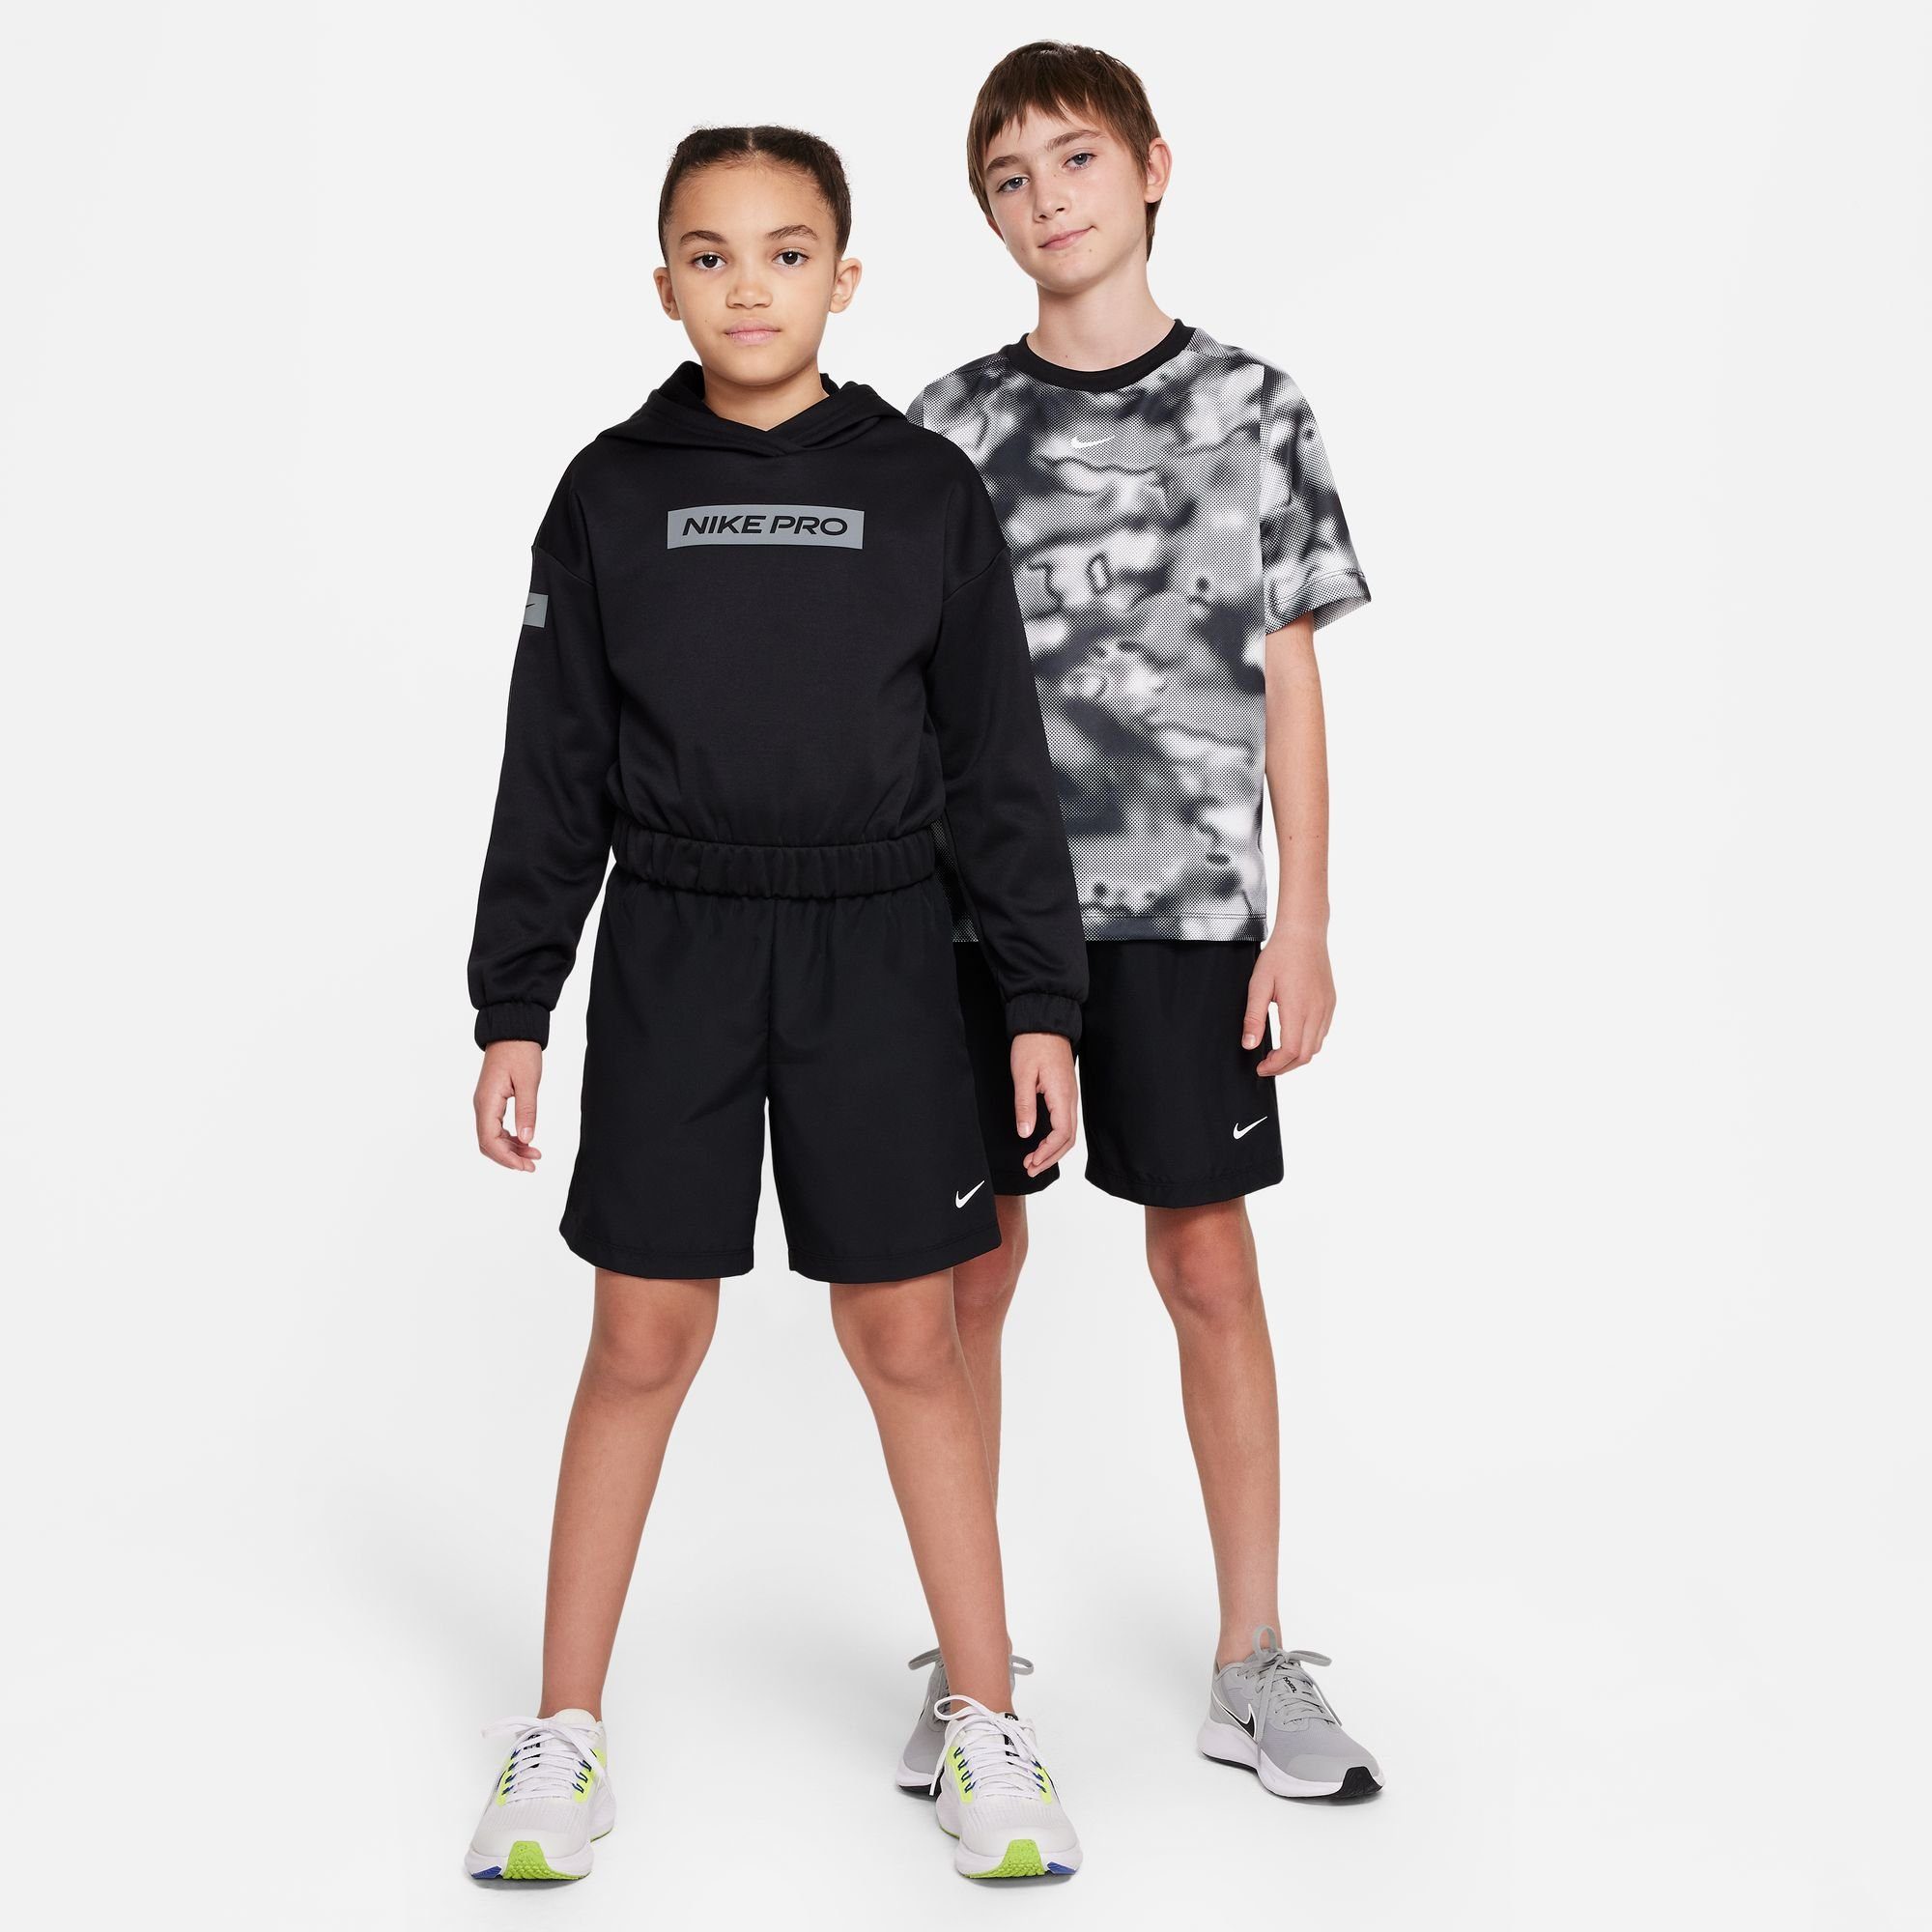 MULTI+ KIDS' TRAINING BIG Nike (BOYS) BLACK/WHITE SHORTS DRI-FIT Trainingsshorts